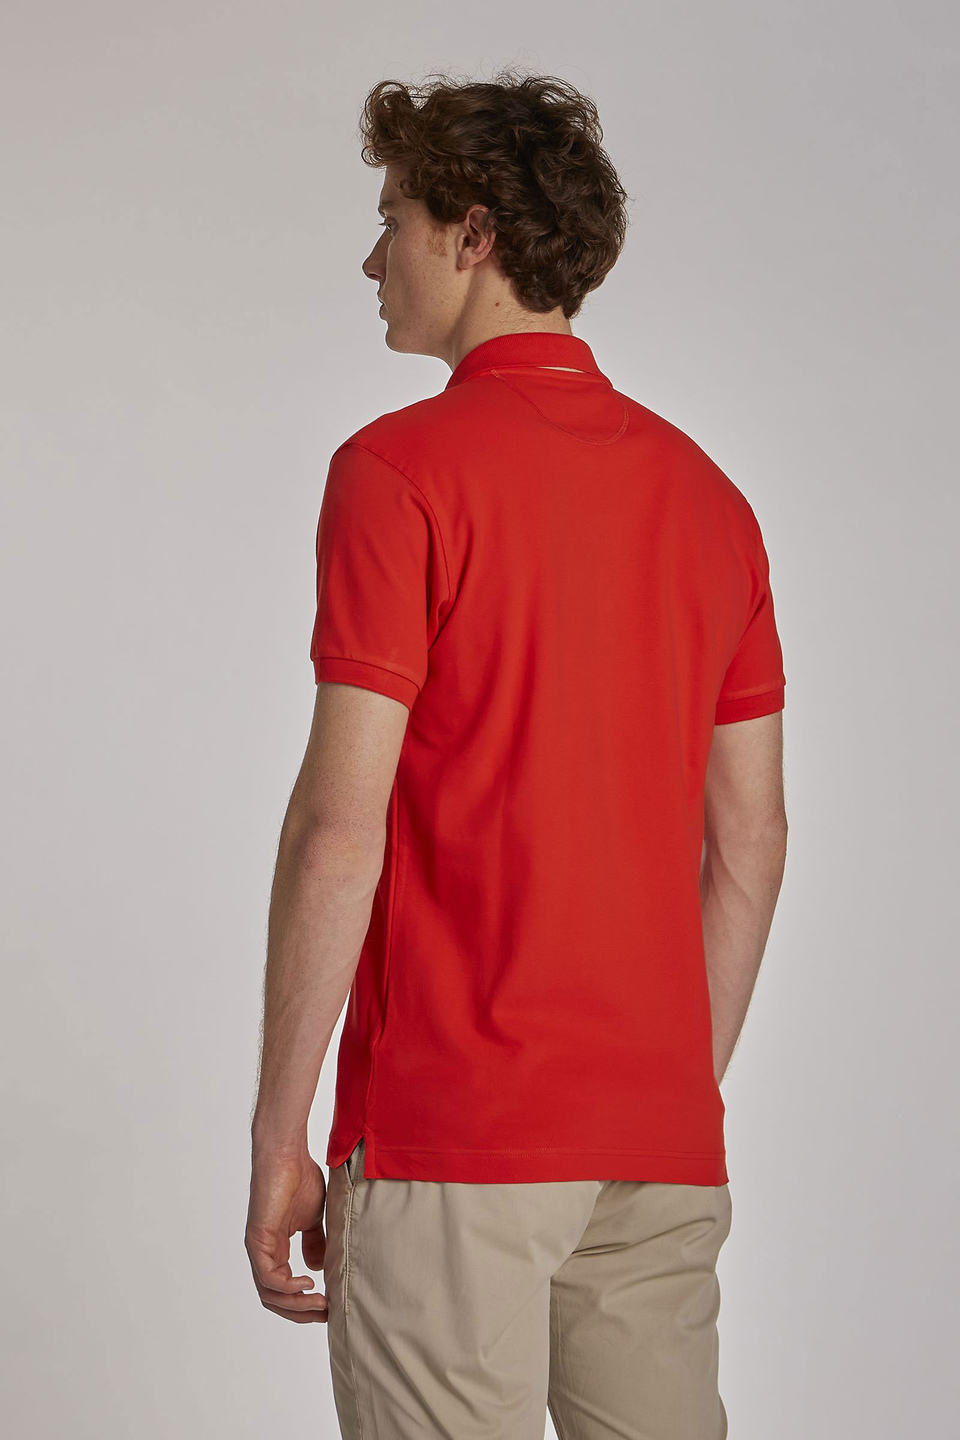 Herren-Poloshirt aus Stretch-Baumwolle mit kurzen Ärmeln im Slim Fit - La Martina - Official Online Shop